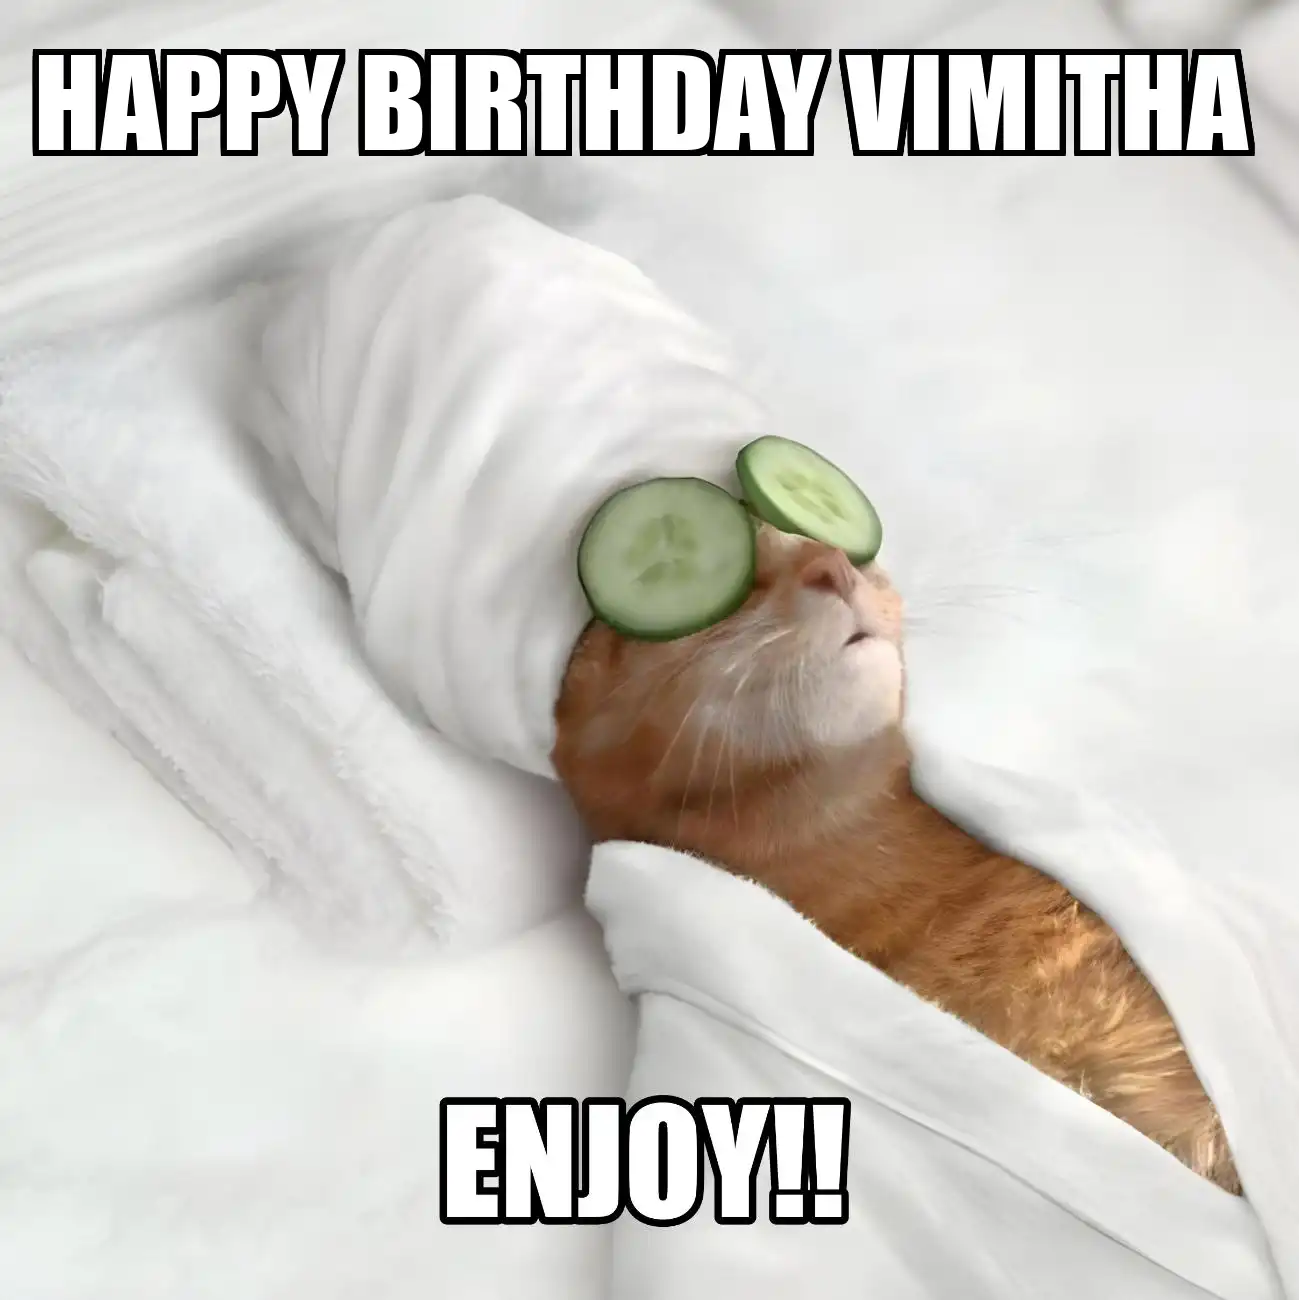 Happy Birthday Vimitha Enjoy Cat Meme